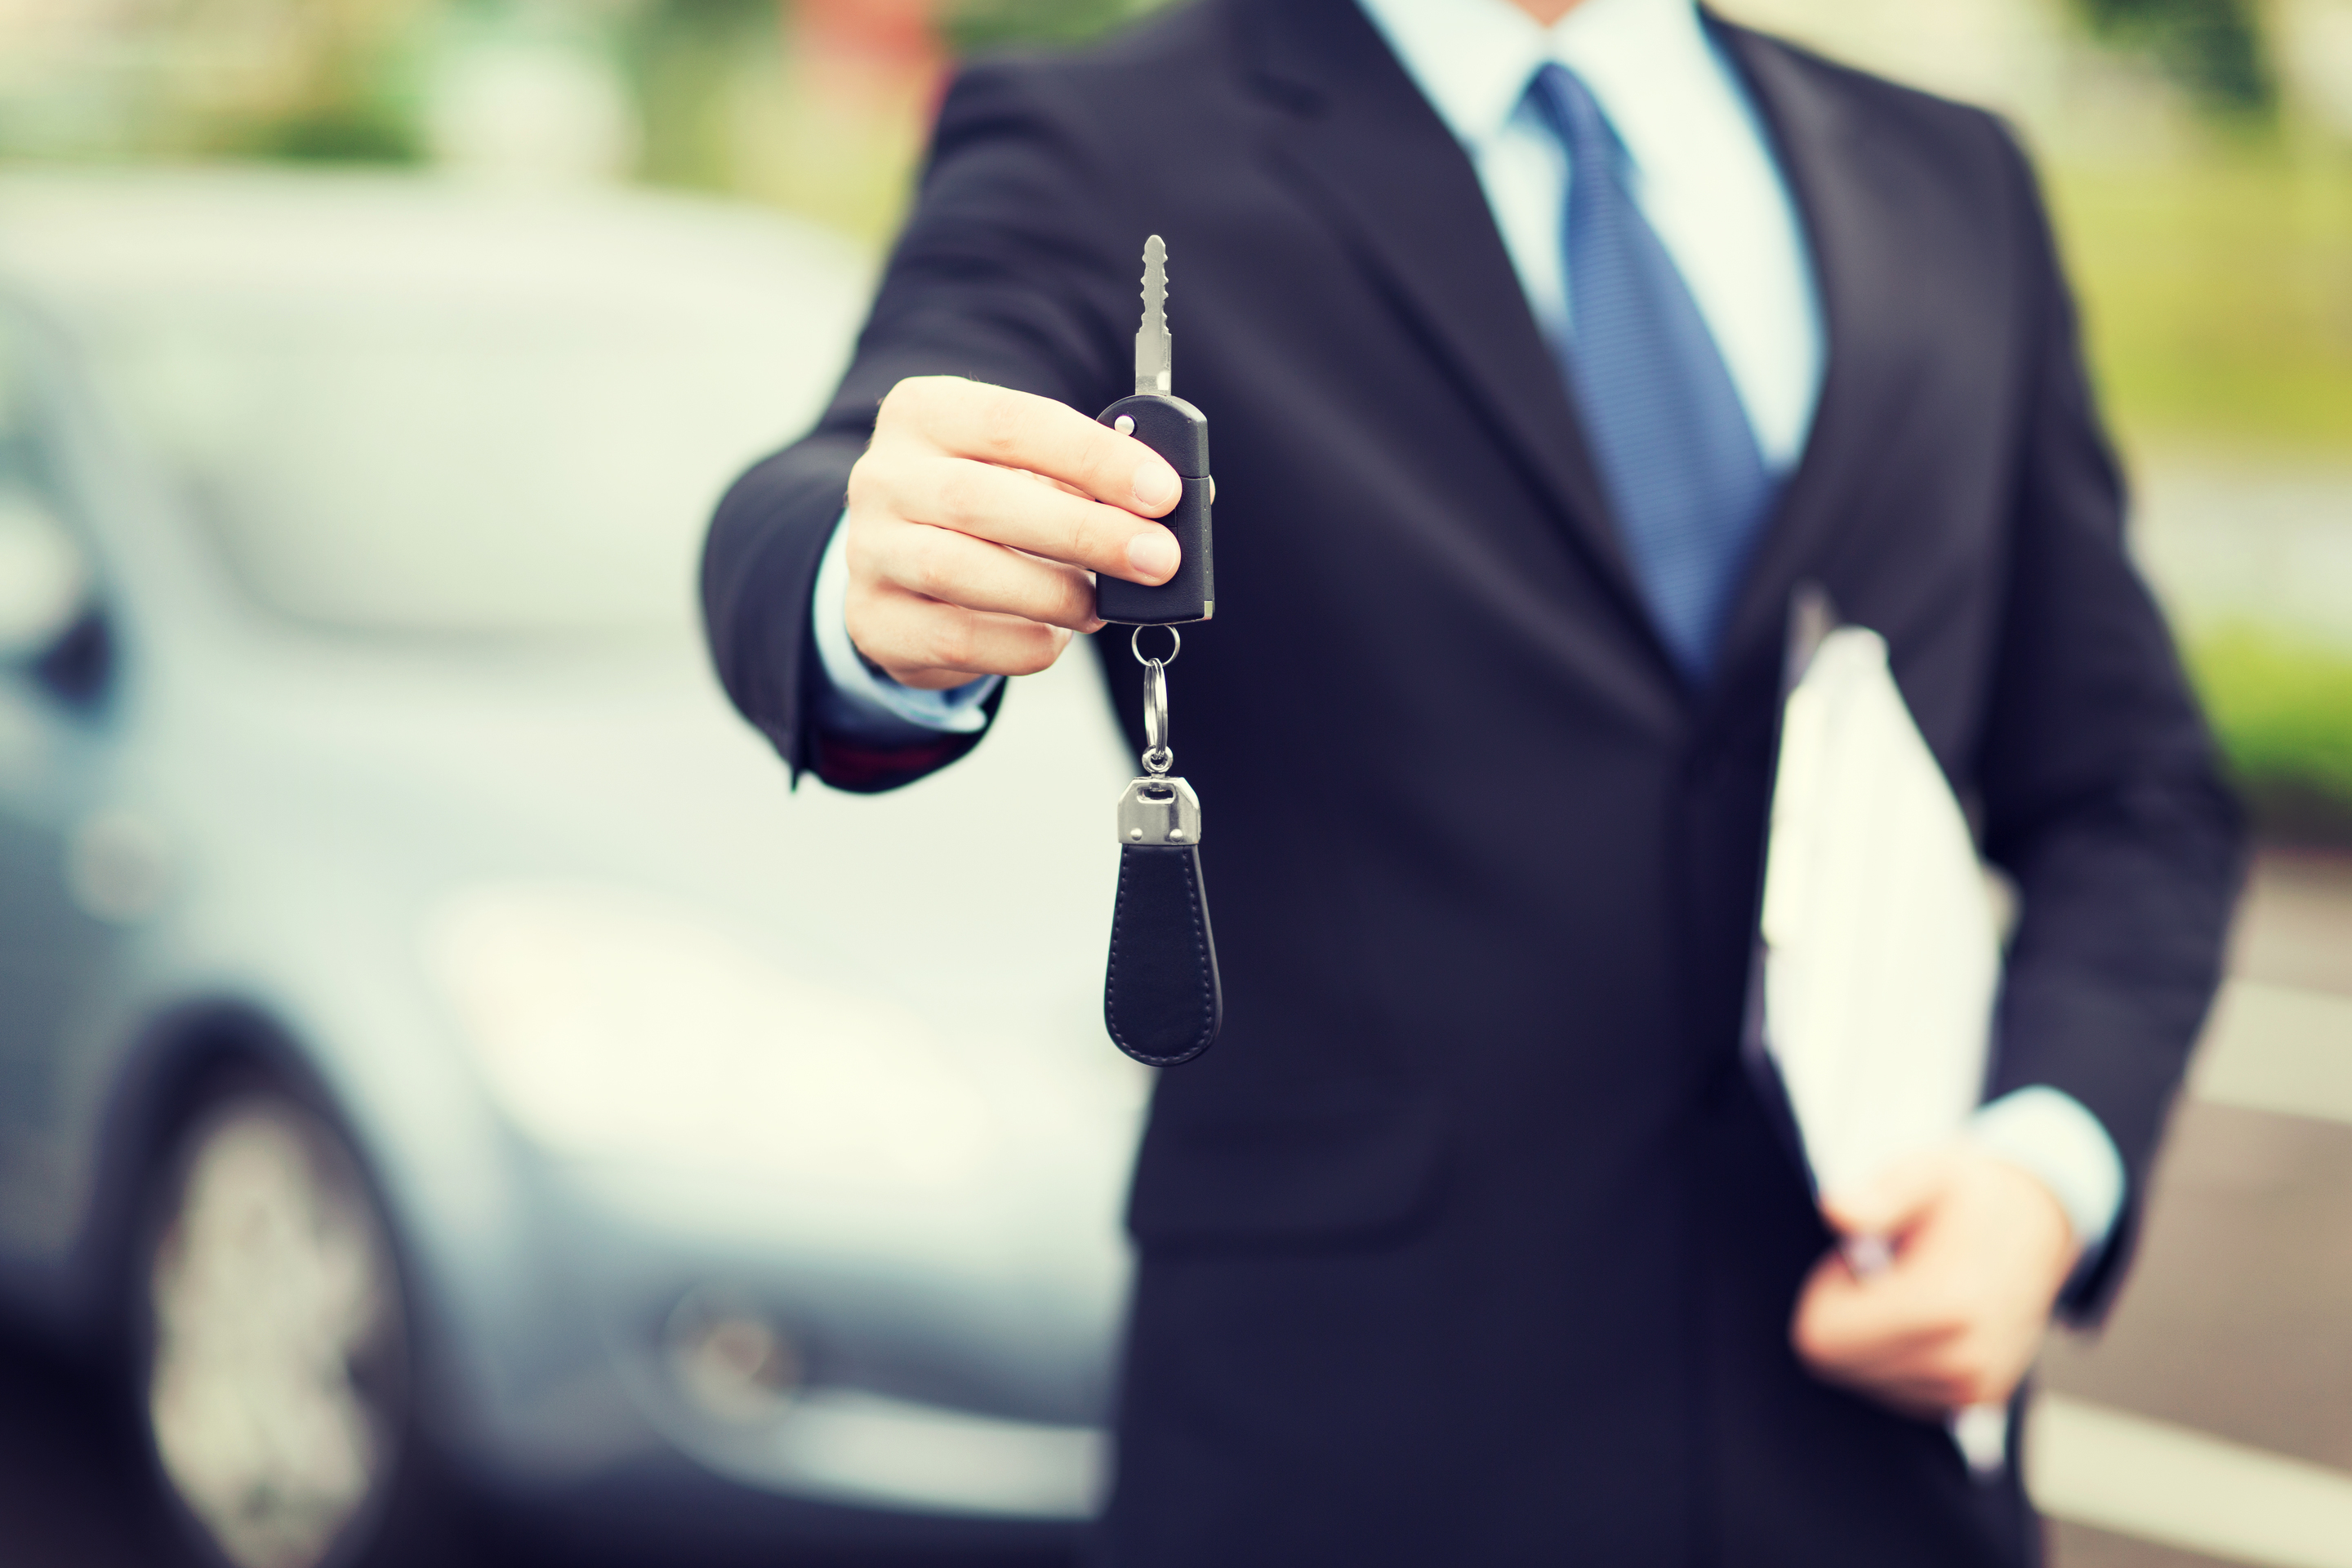 Car offer. Человек с ключами от машины. Ключи от машины в руке. Передача ключей от машины. Мужик с ключами от машины.